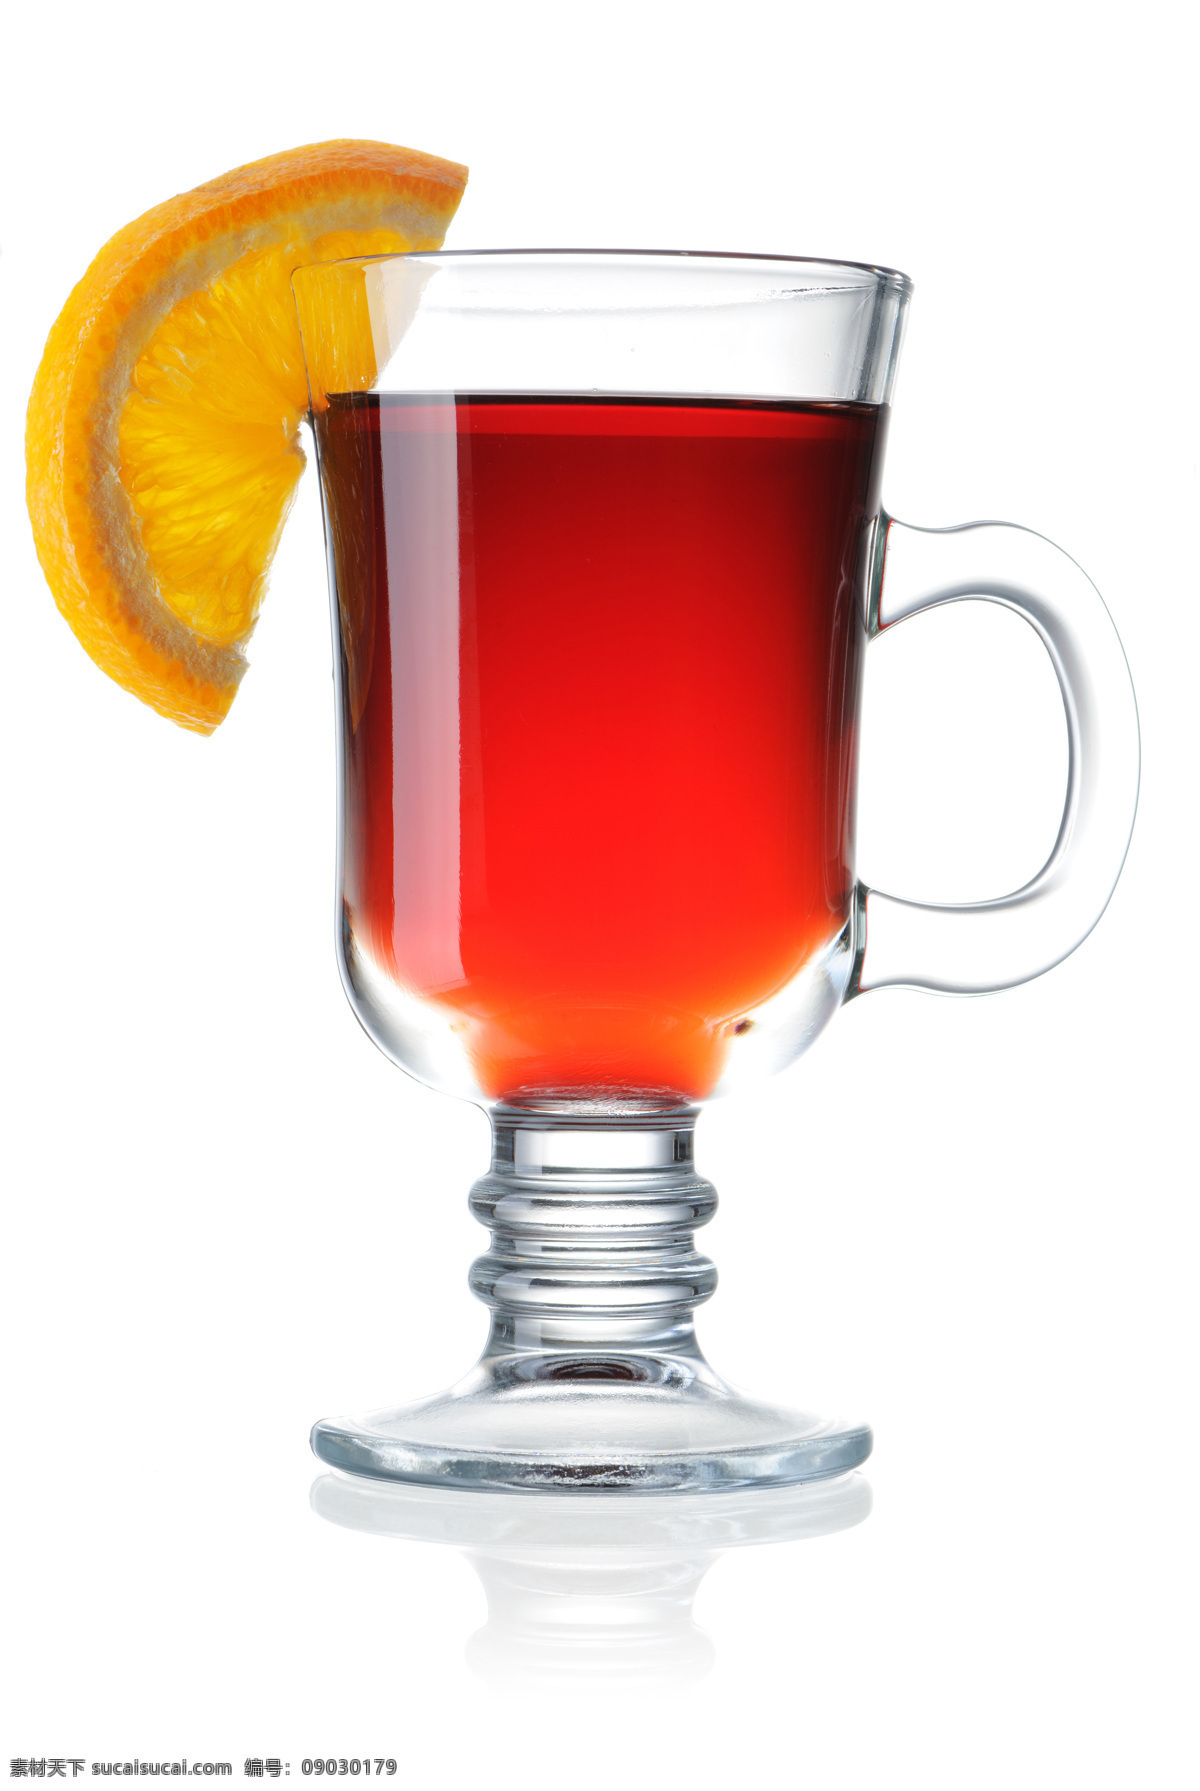 玻璃杯 上 柠檬 片 茶水 热饮料 水果 柠檬片 酒类图片 餐饮美食